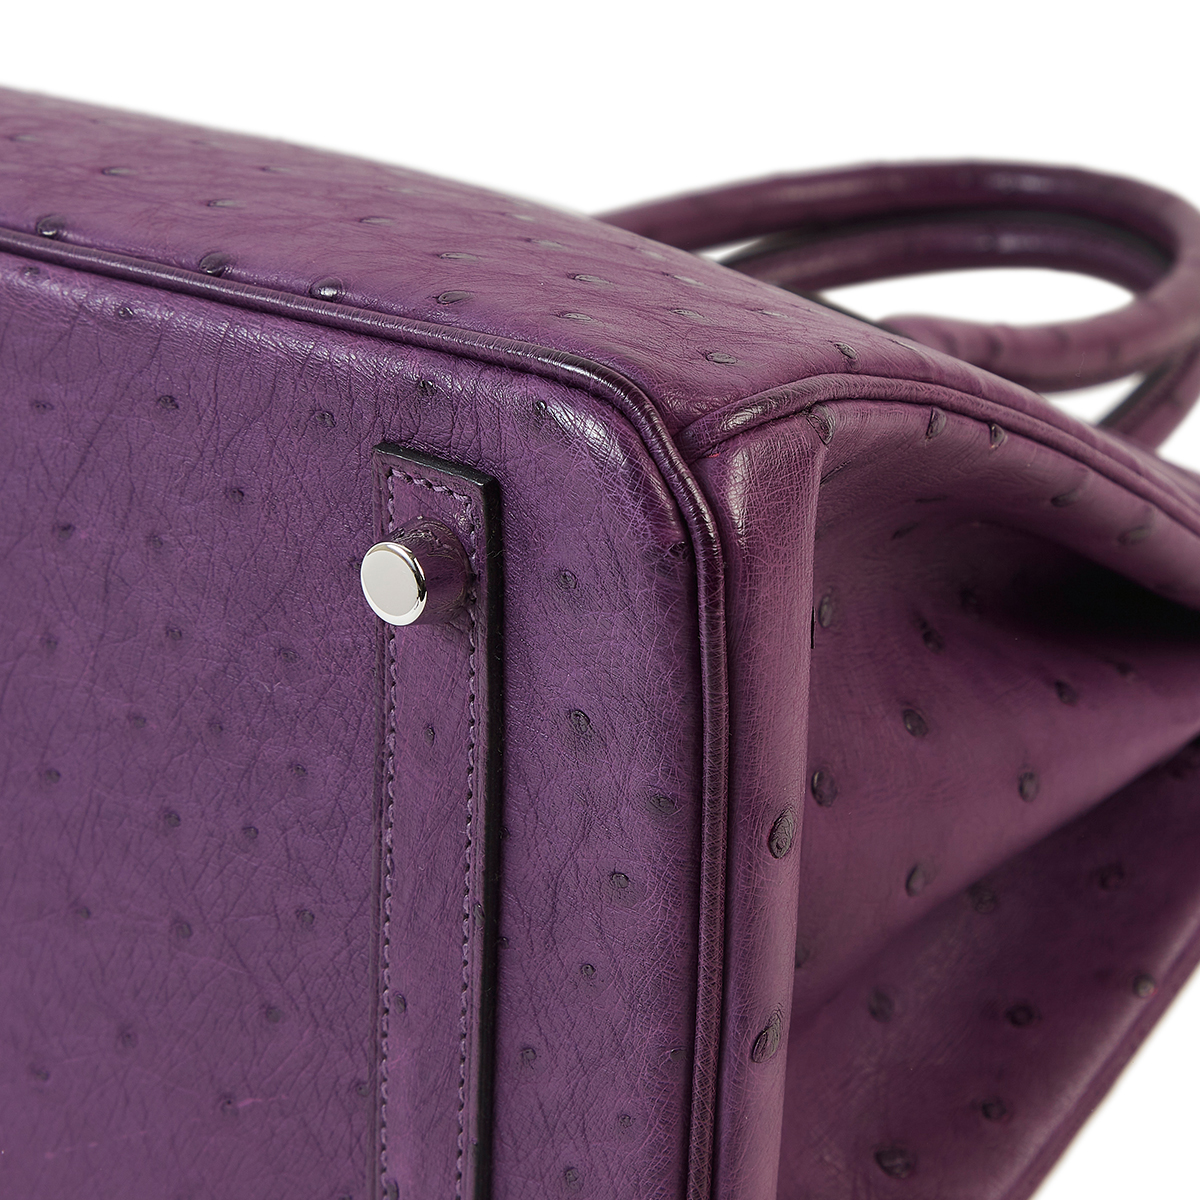 The Pink Ostrich Handbag – Western Vogue Boutique